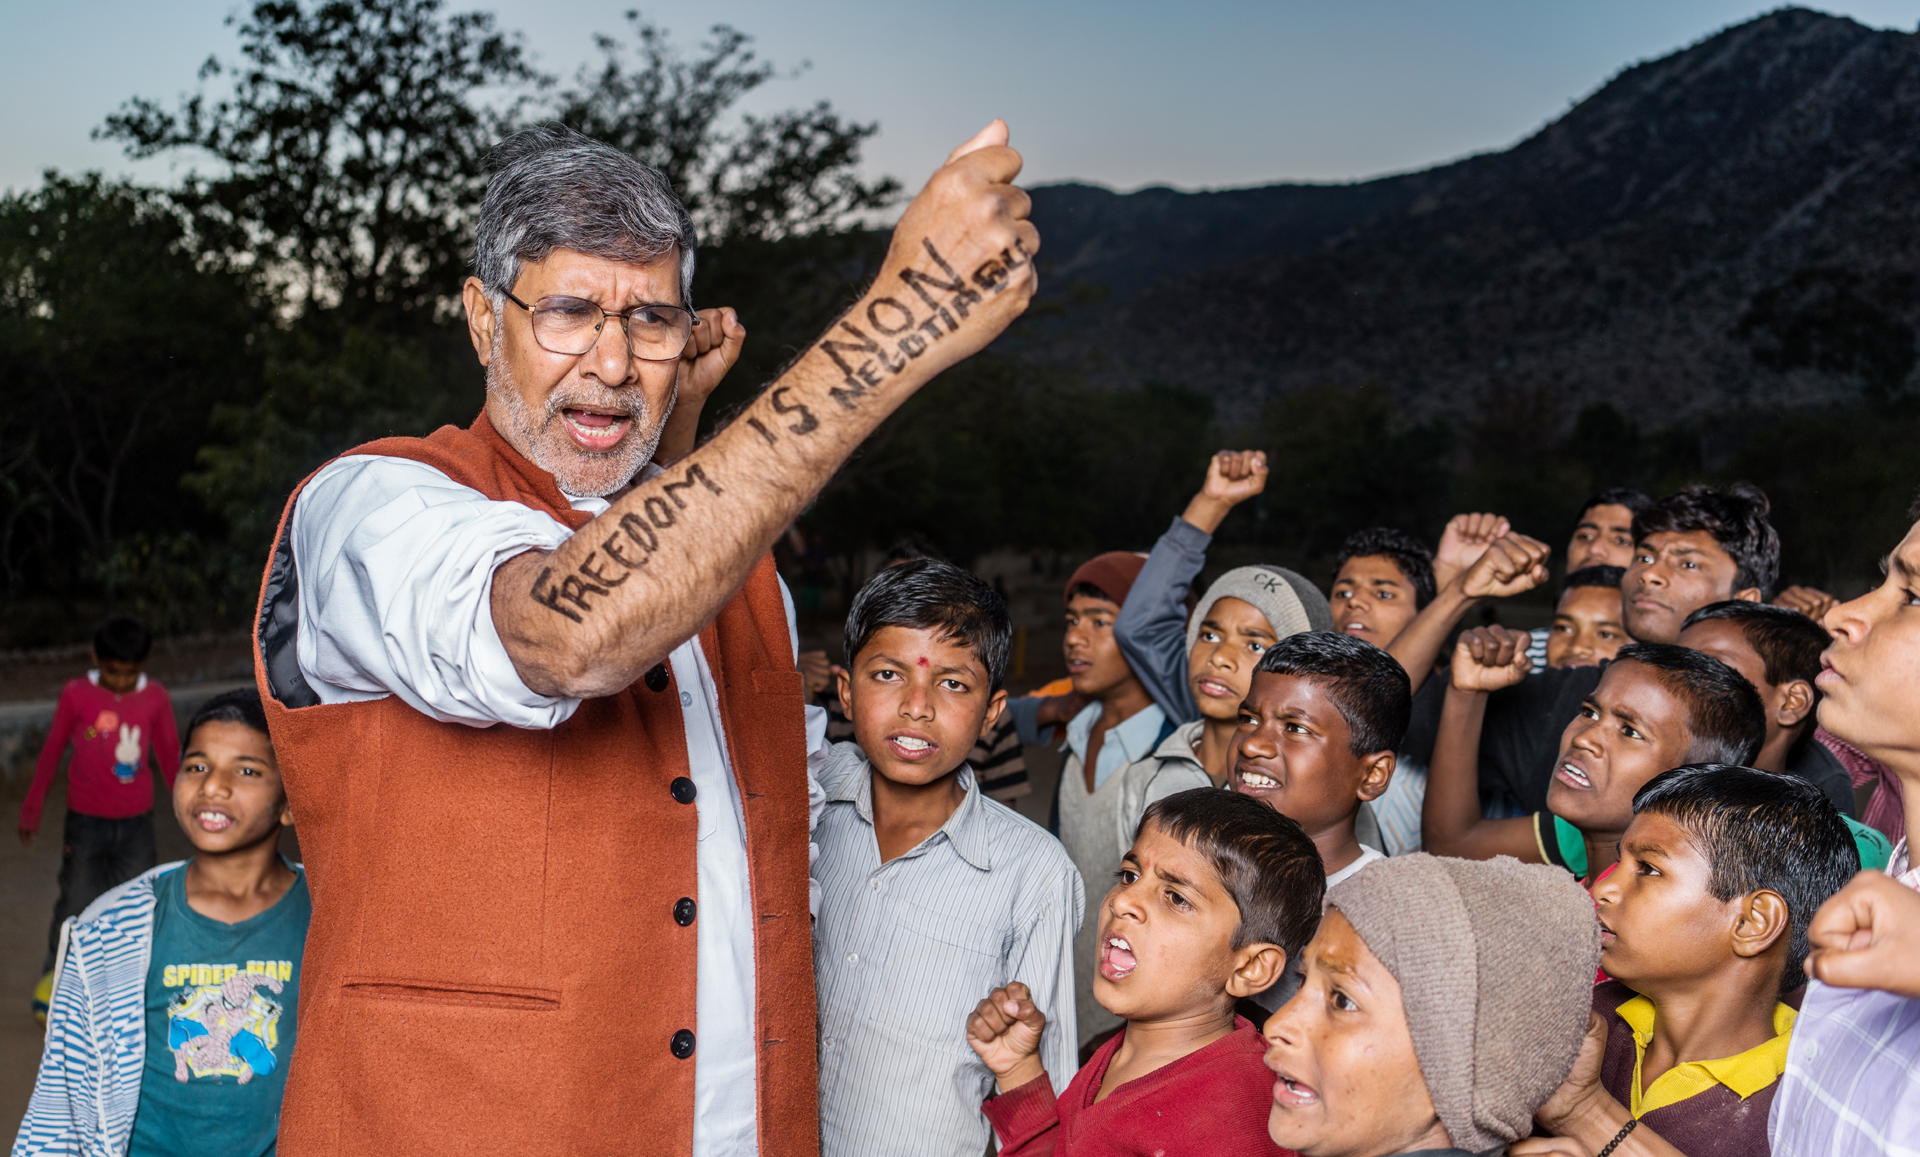 Kailash Satyarthi Nobel Prize Winner with Children